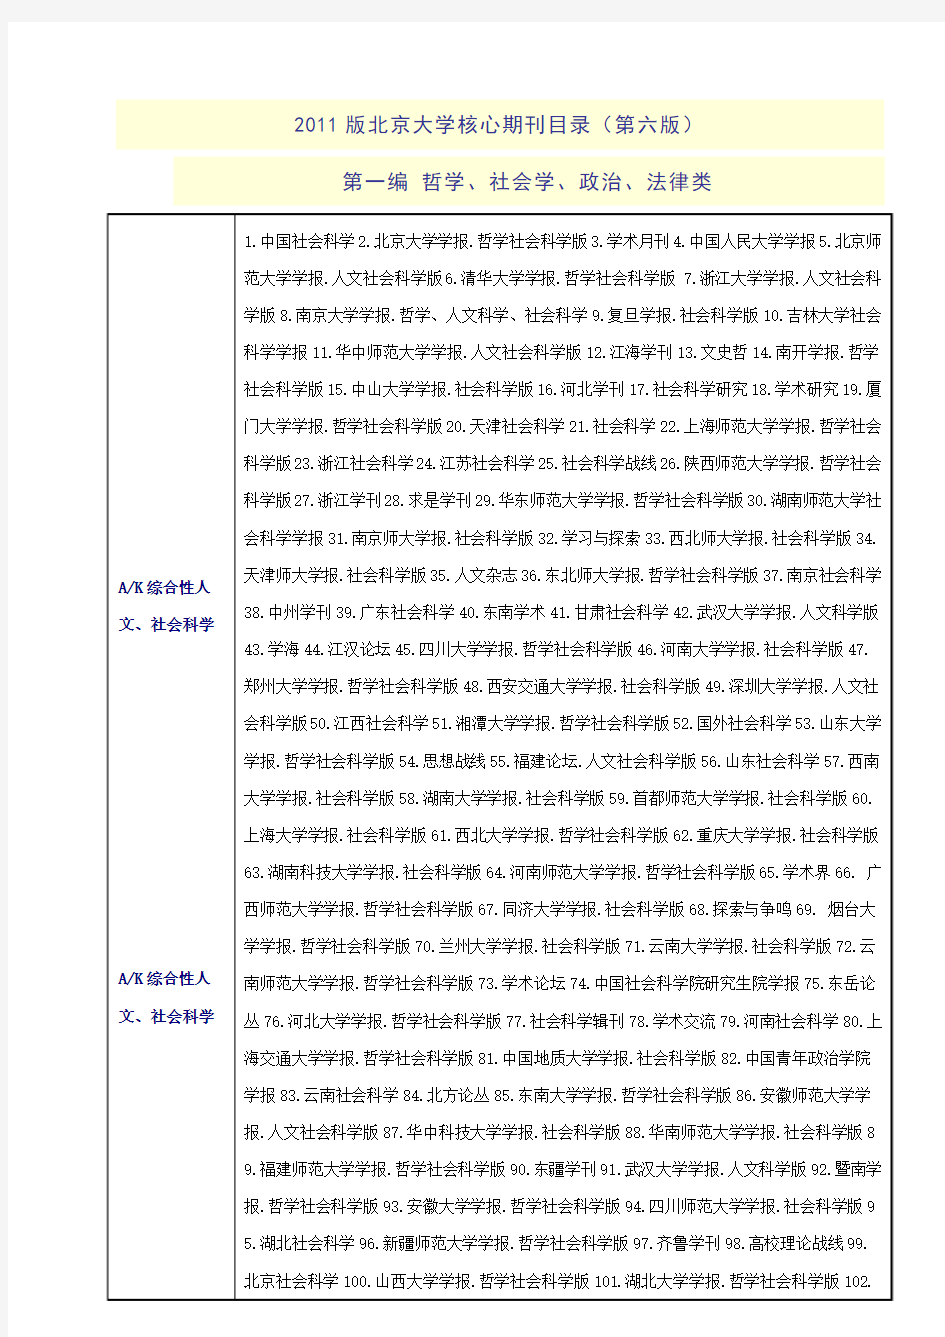 2011版北京大学核心期刊目录(第六版) 第一编 哲学、社会学、政治